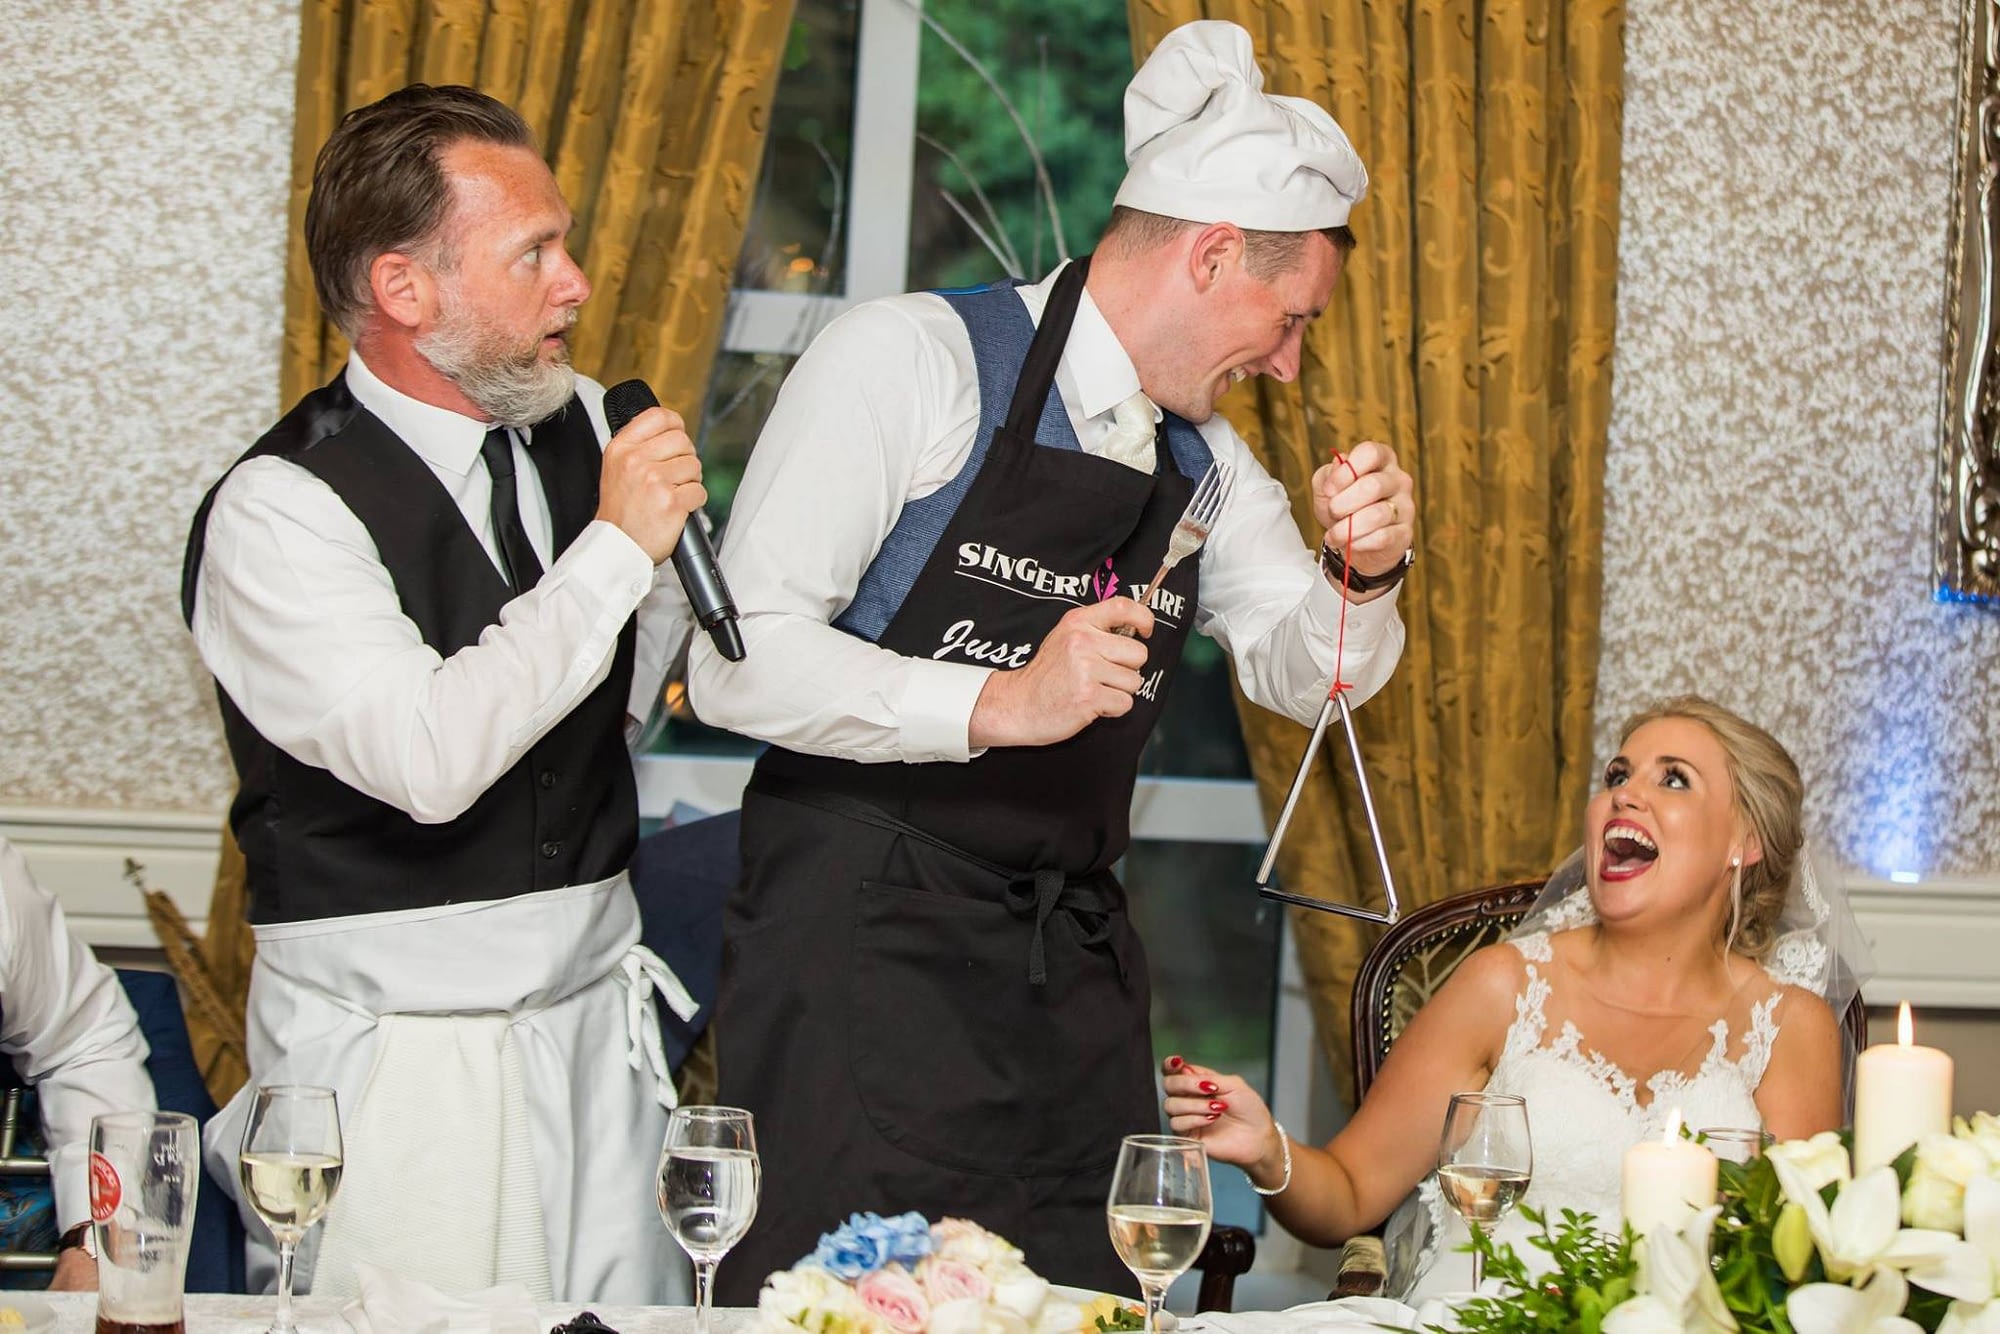 singing waiters Ireland